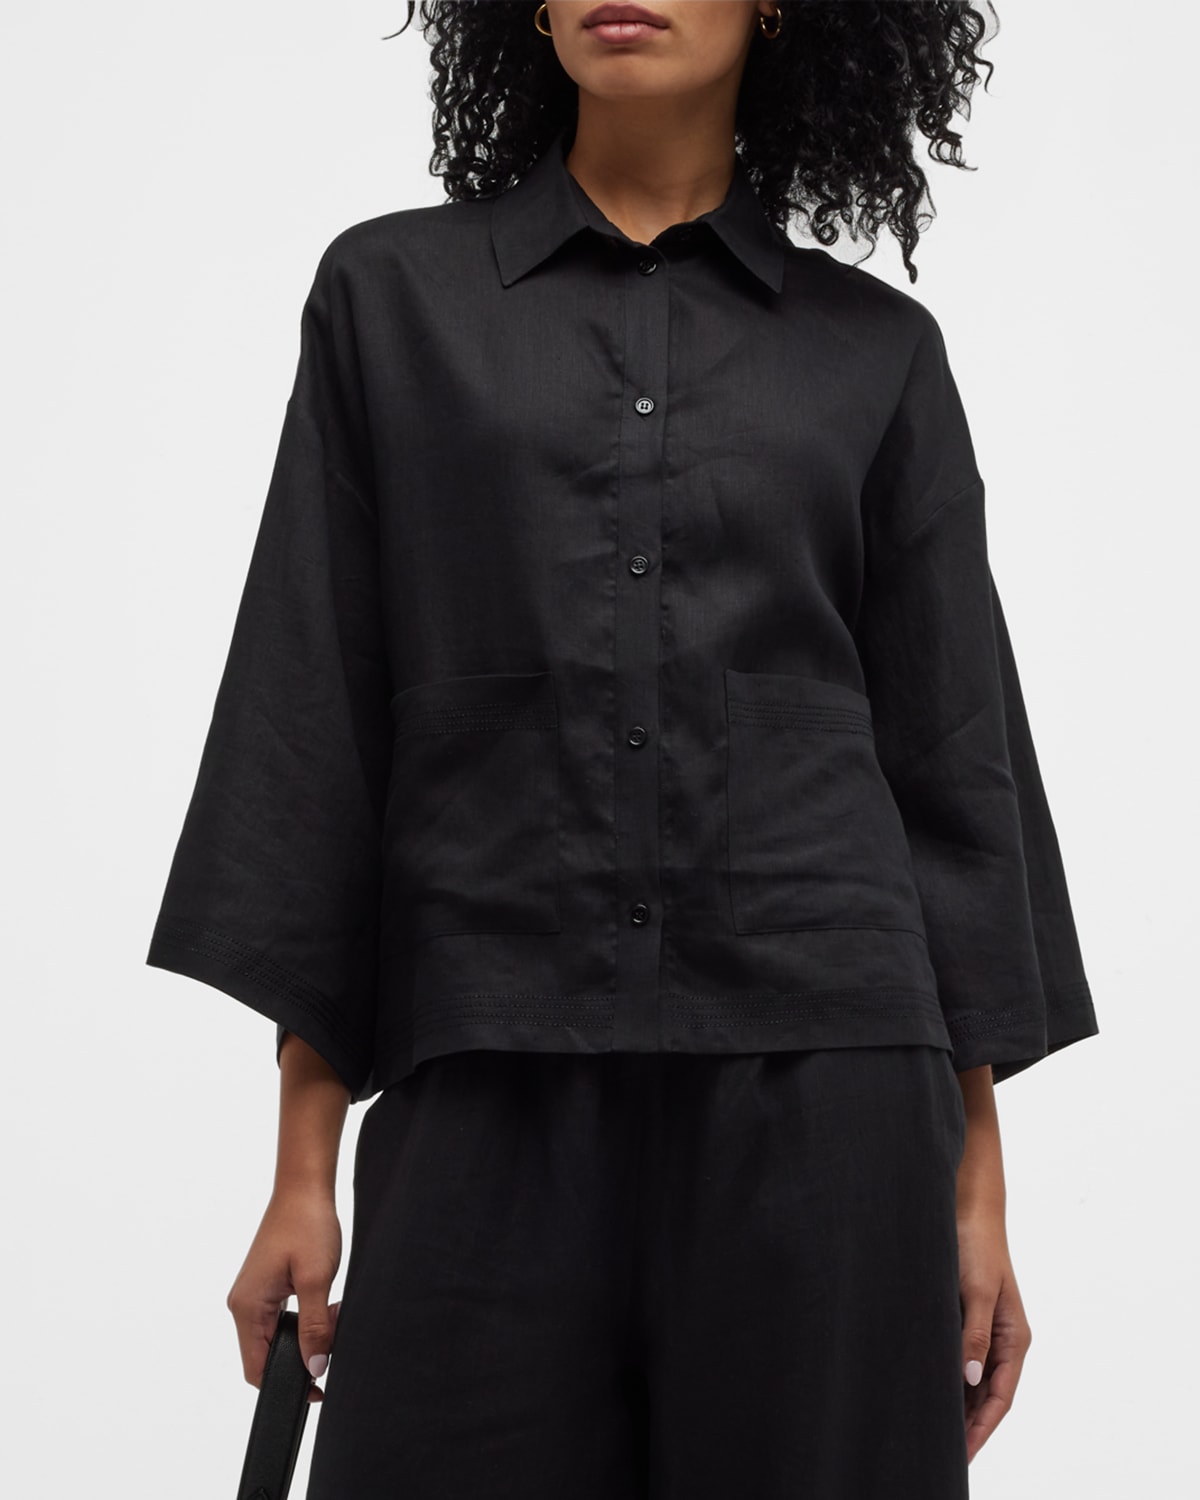 Angora 3/4-Sleeve Button-Down Linen Shirt